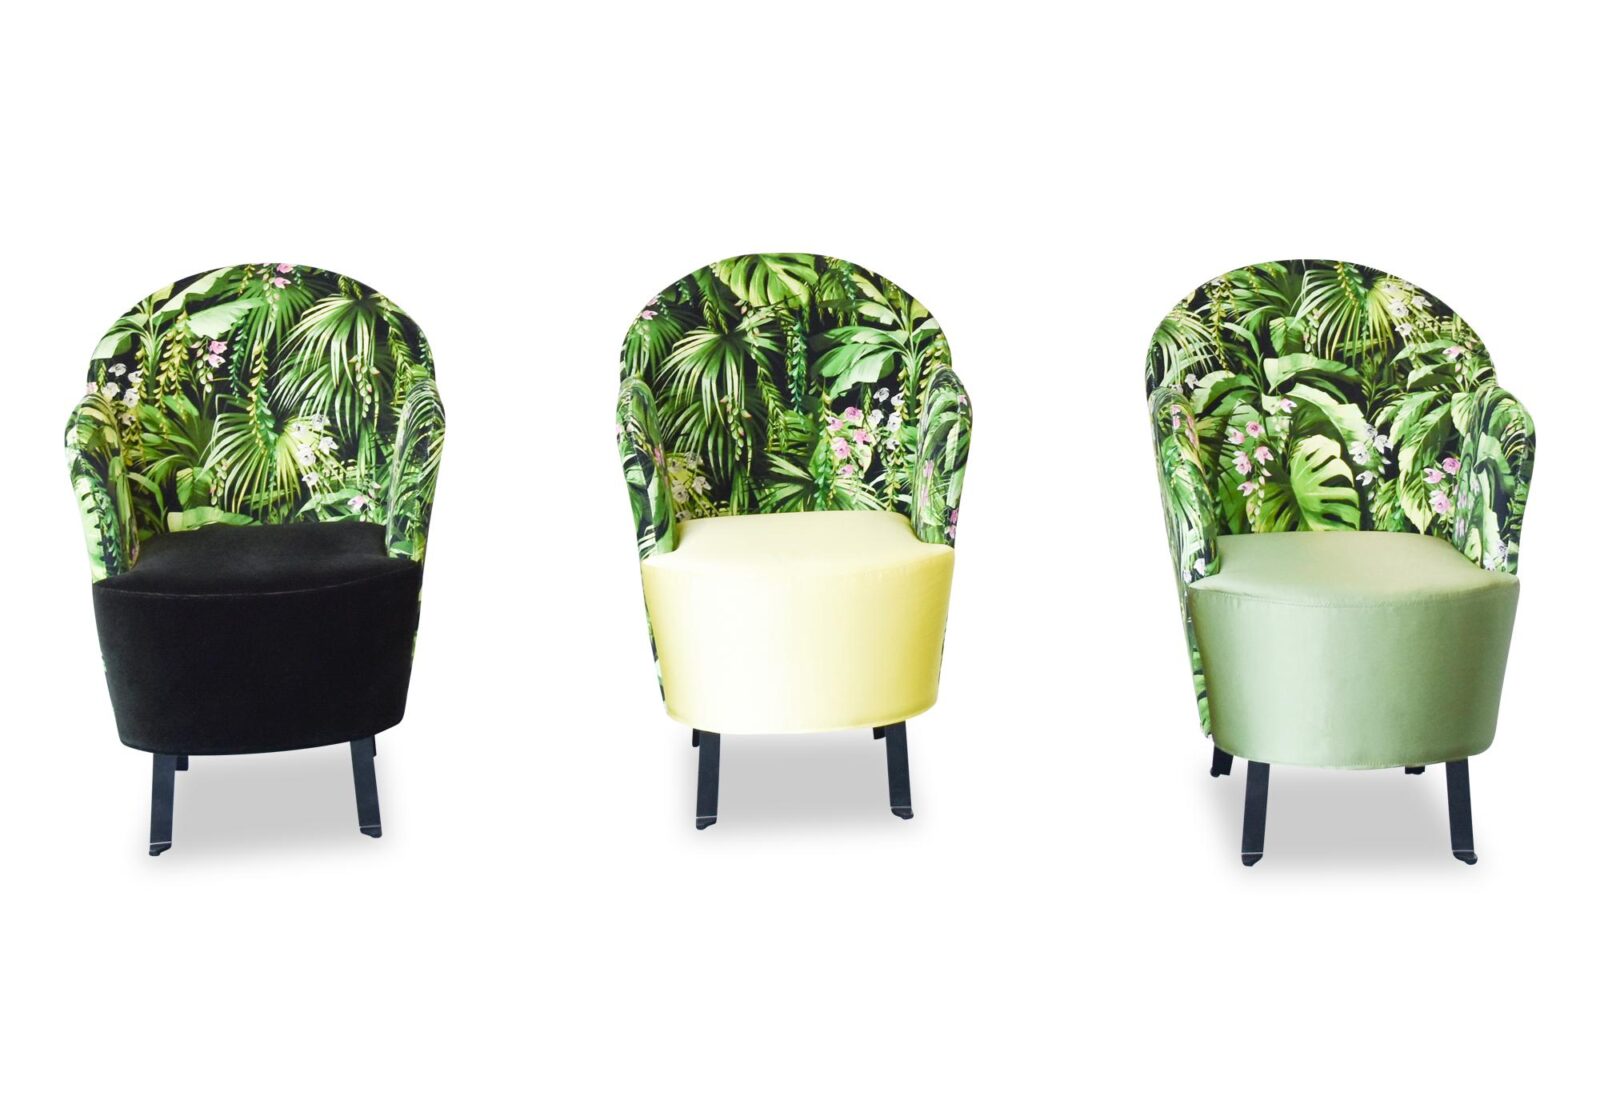 Sessel Floret mit Armlehnen. Bezug: Stoff. Farbe: Grün-Schwarz-Grün gemustert. Erhältlich bei Möbel Gallati.